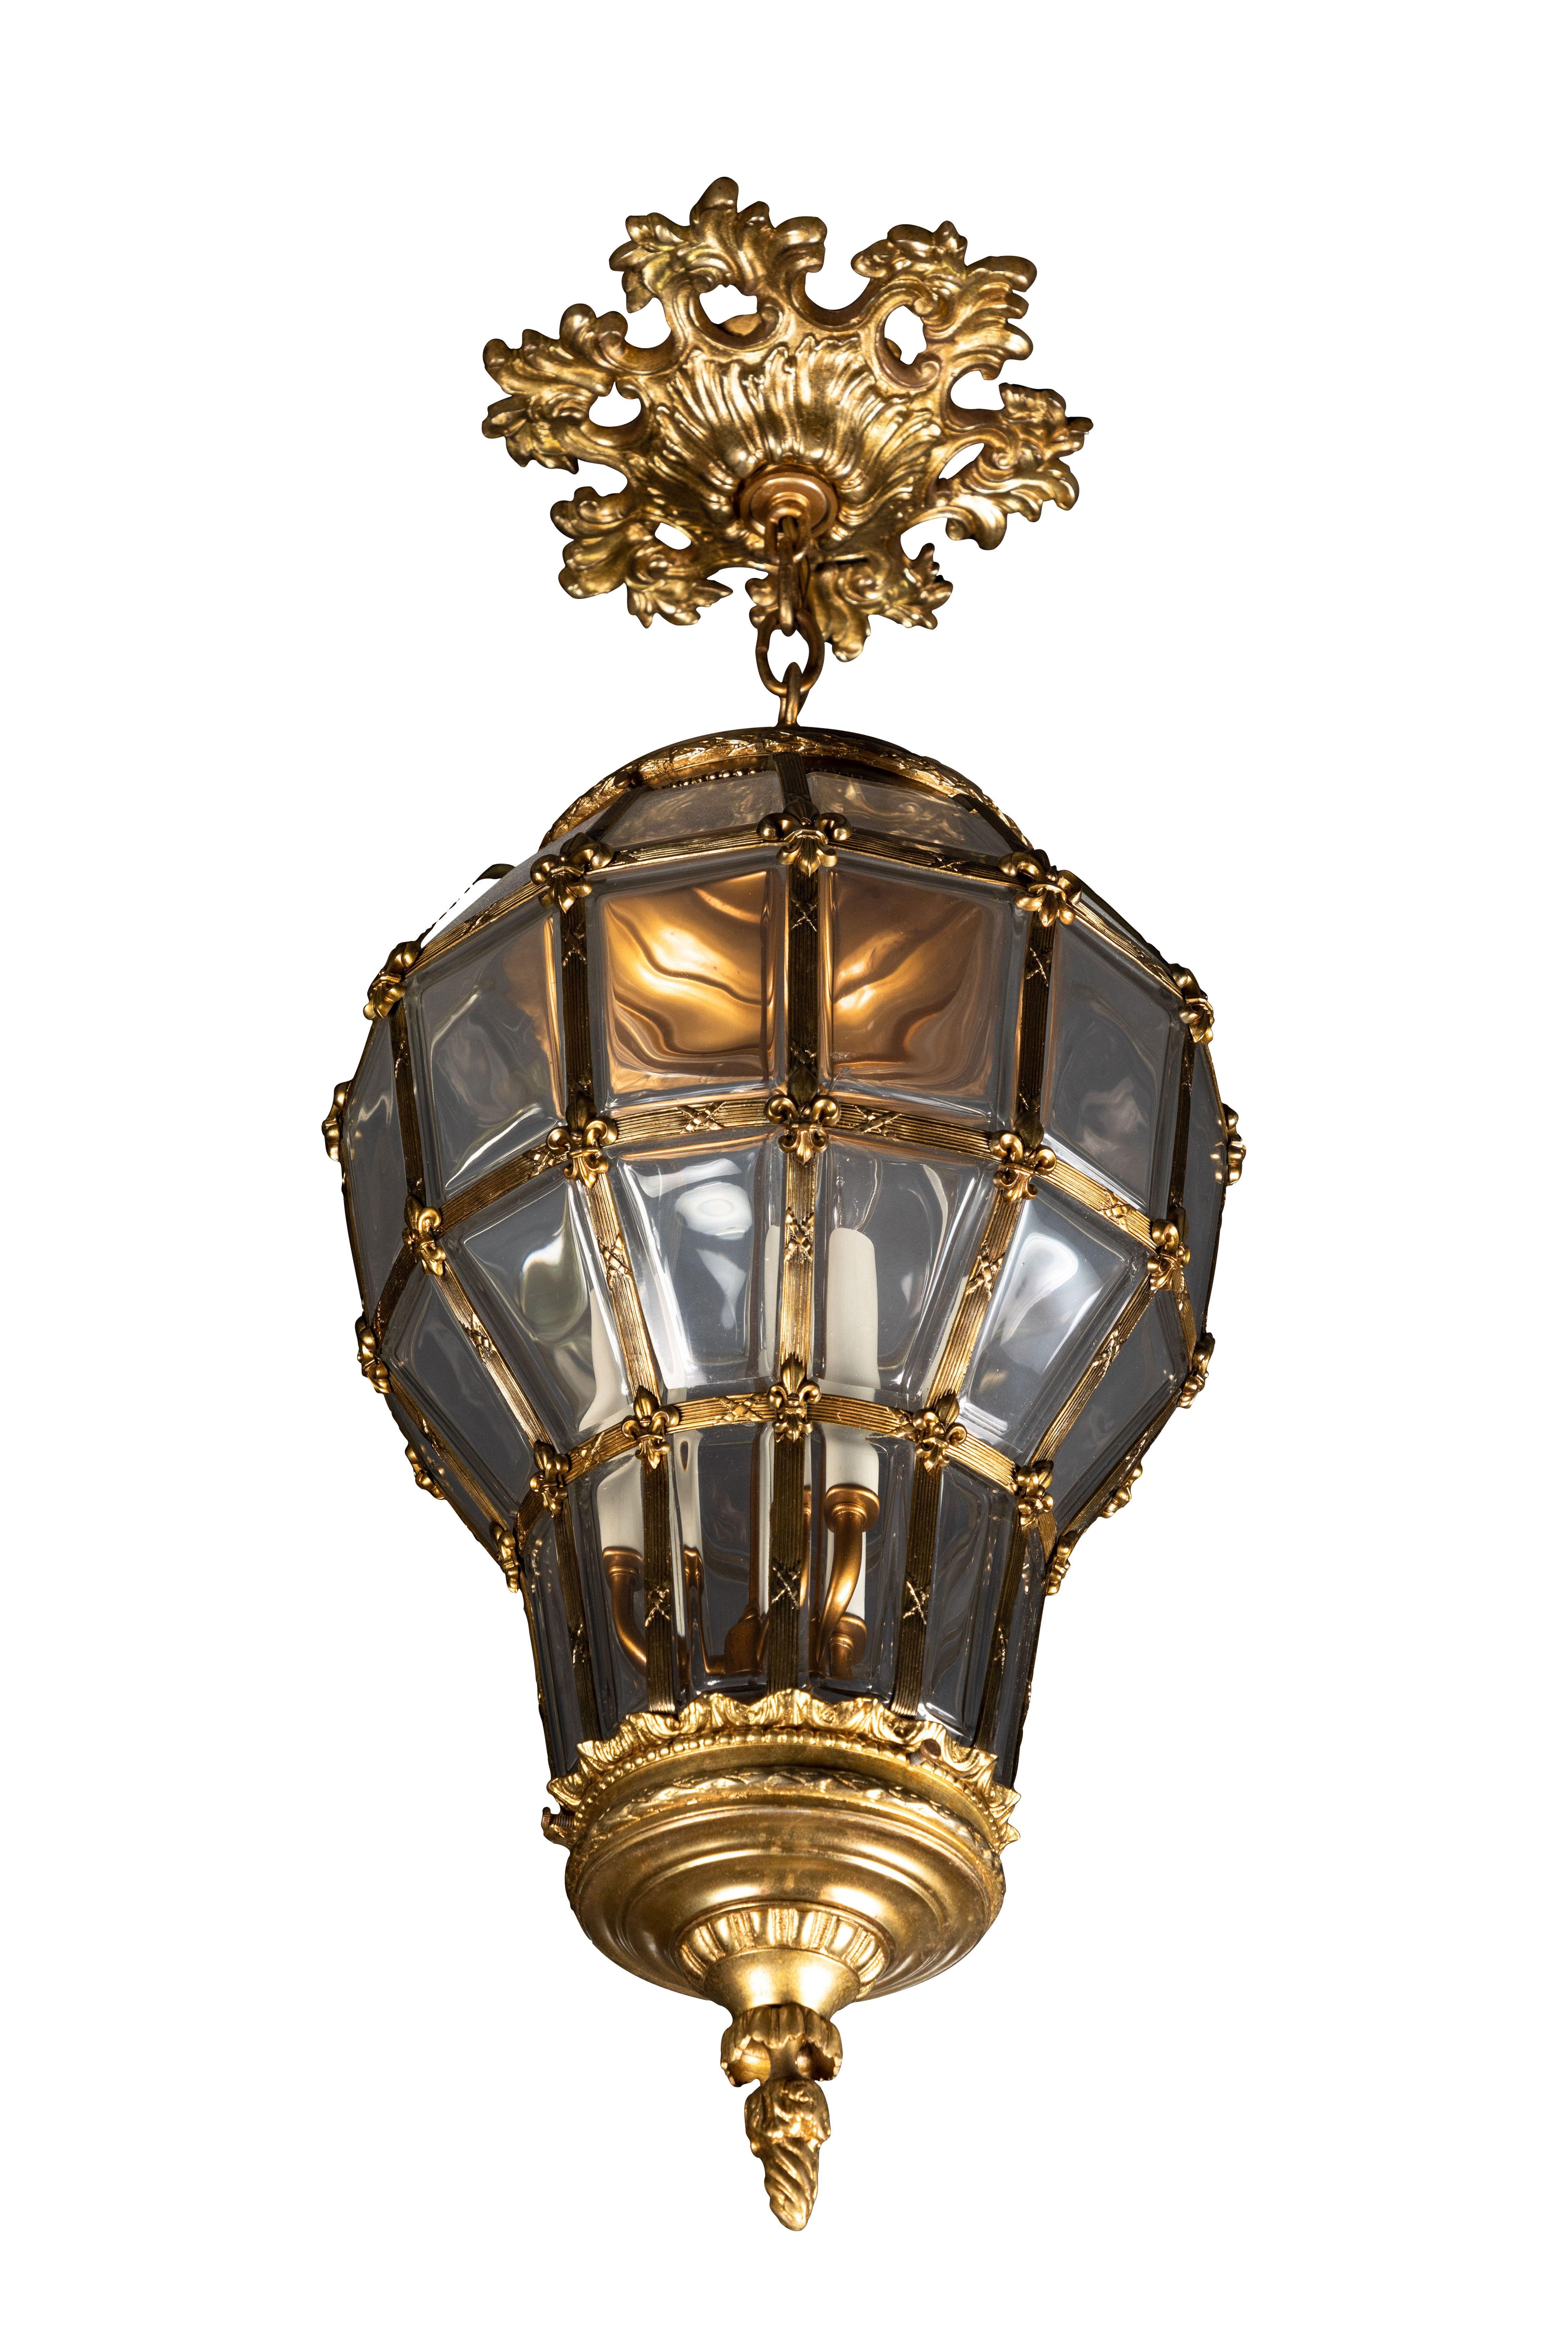 Grande lanterne suspendue ancienne de style Louis XV en verre avec écusson de plafond, métal doré et verre. La lanterne accepte trois ampoules de type candélabre. La goutte est sur une chaîne variable.